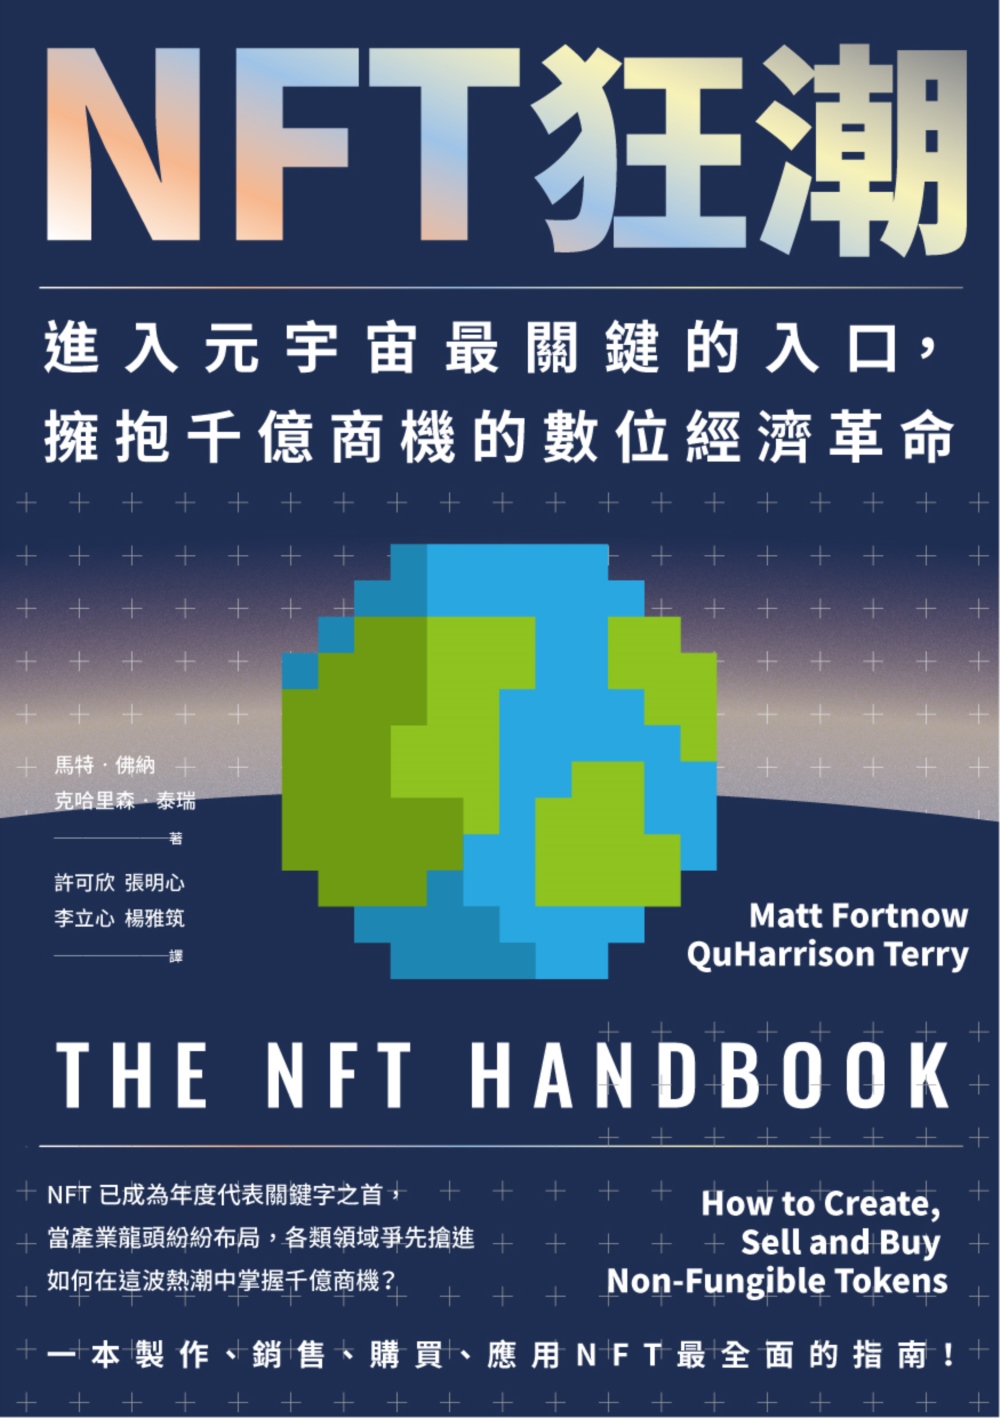 NFT狂潮: 進入元宇宙最關鍵的入口,擁抱千億商機的數位經濟革命